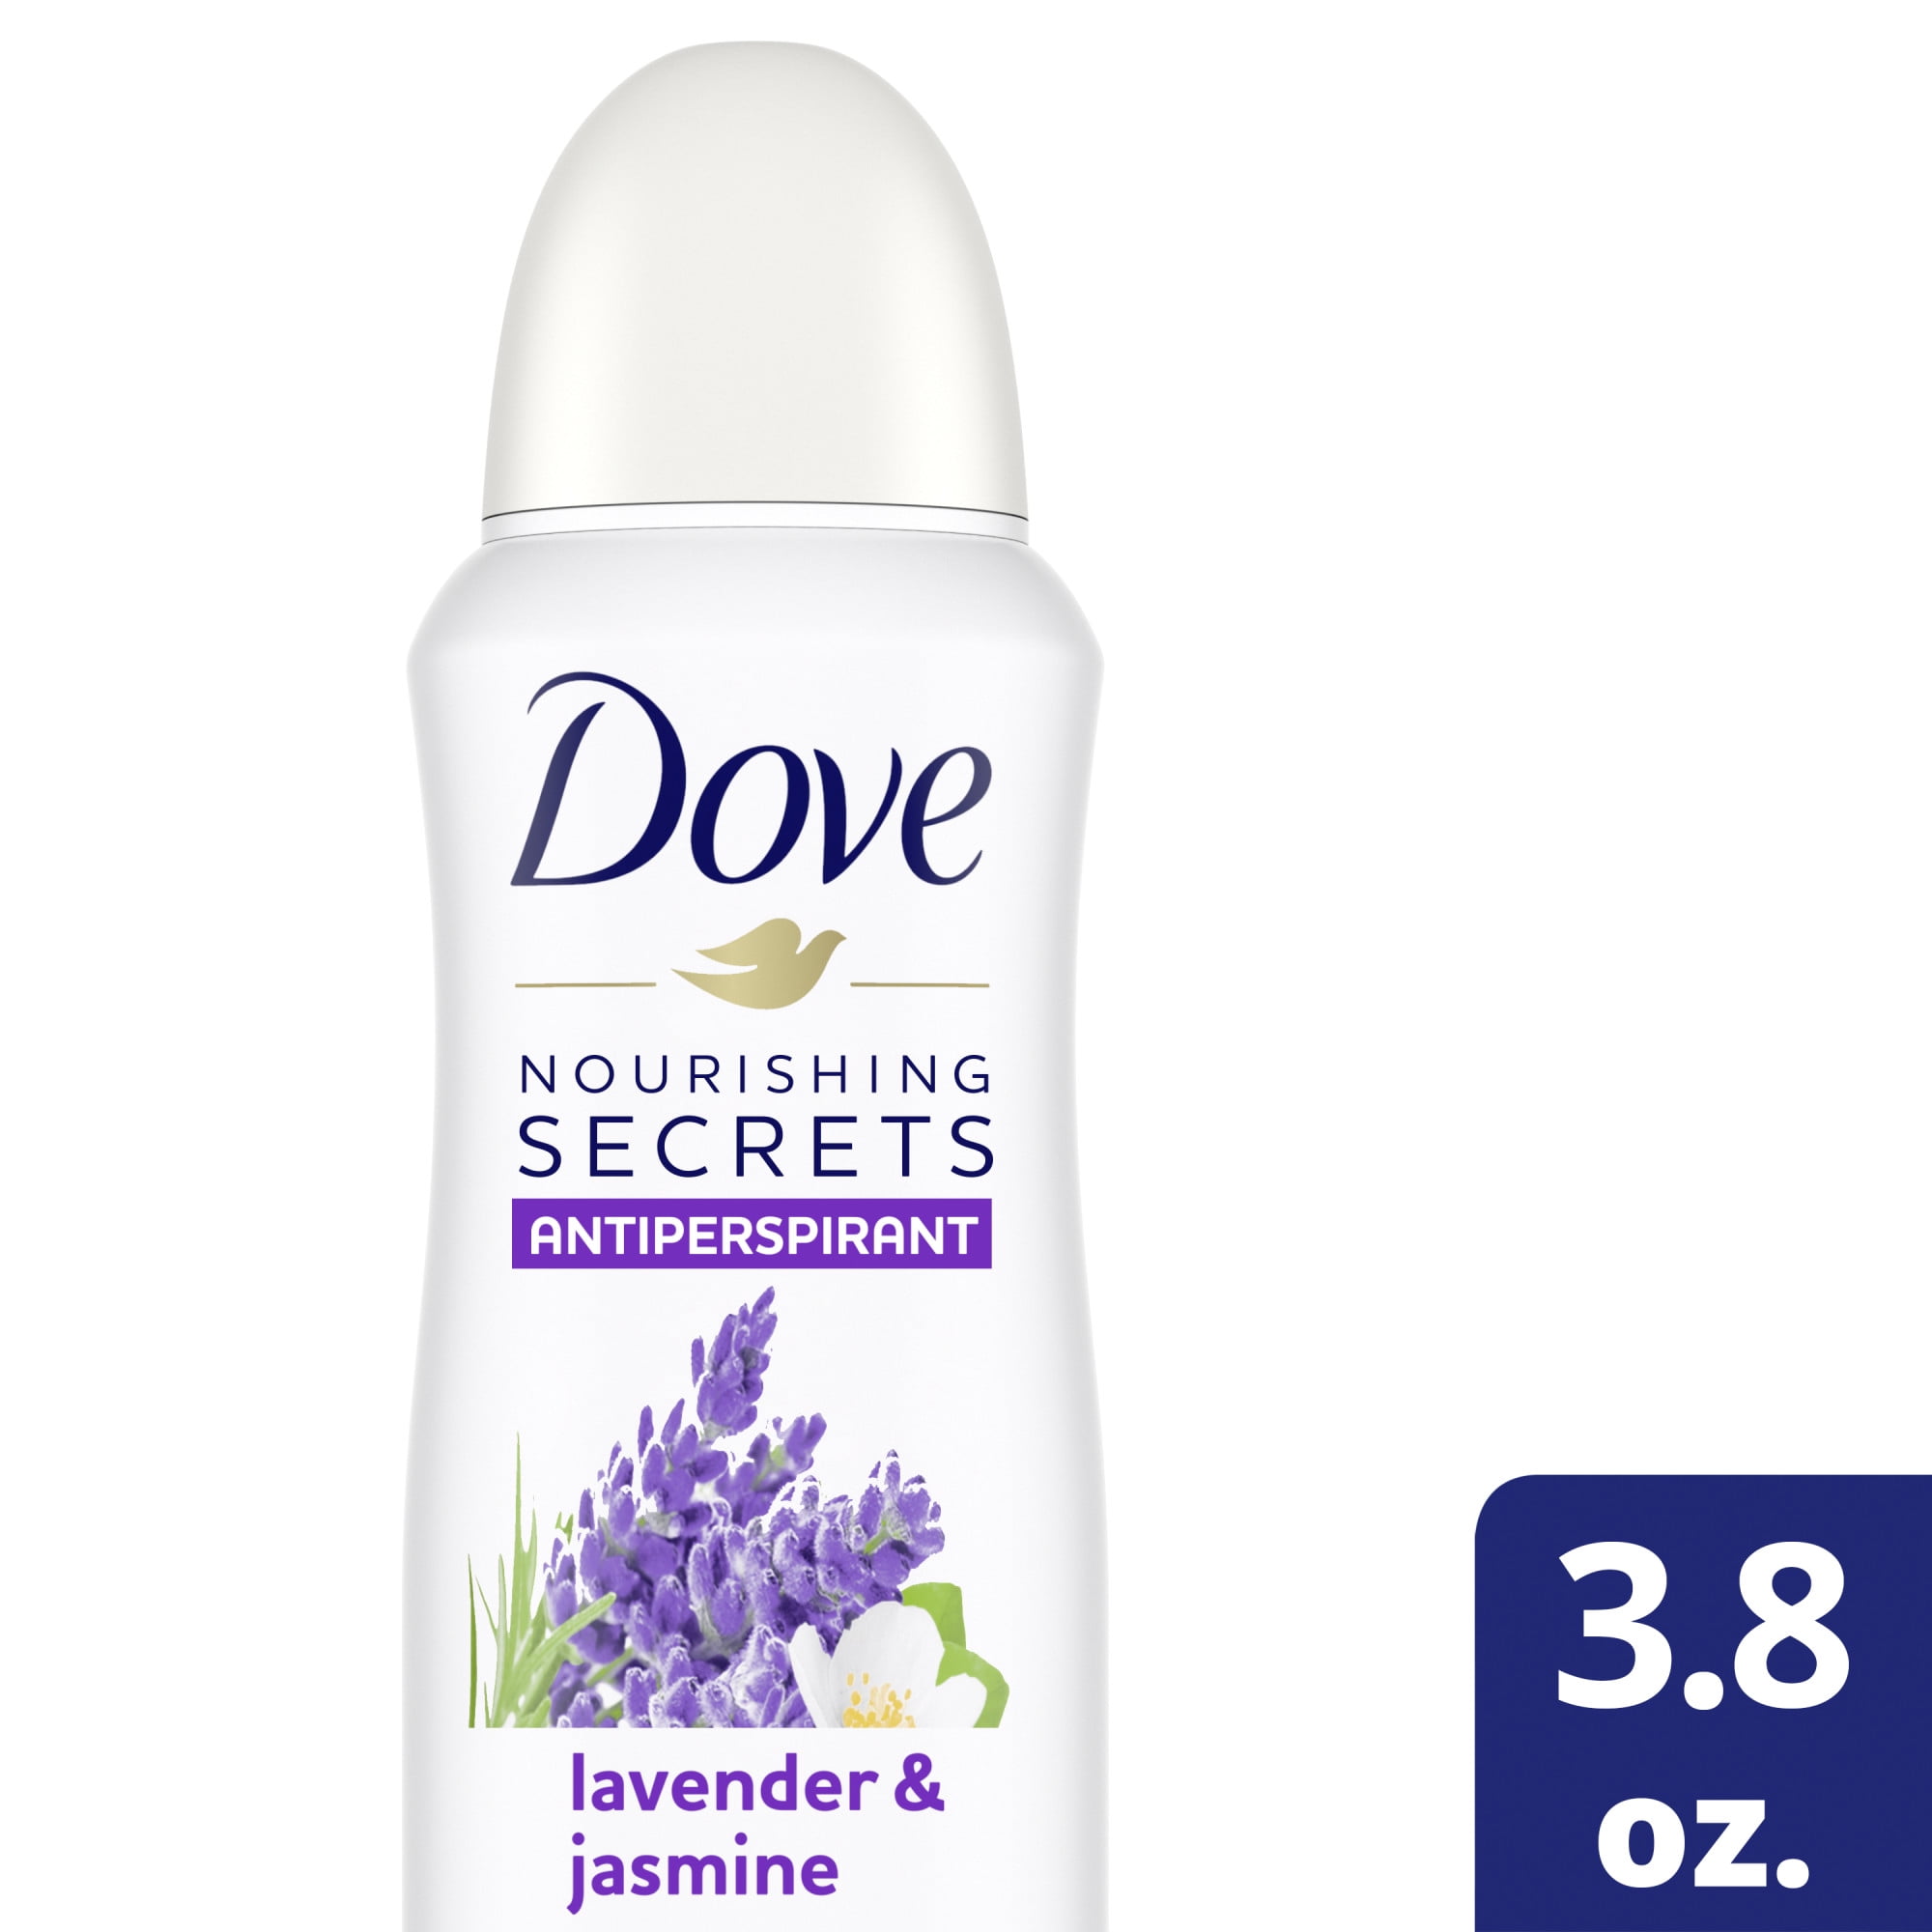 3 x Dove Coconut Jasmine Restoring Ritual Antiperspirant Deodorant Spray,  150ml